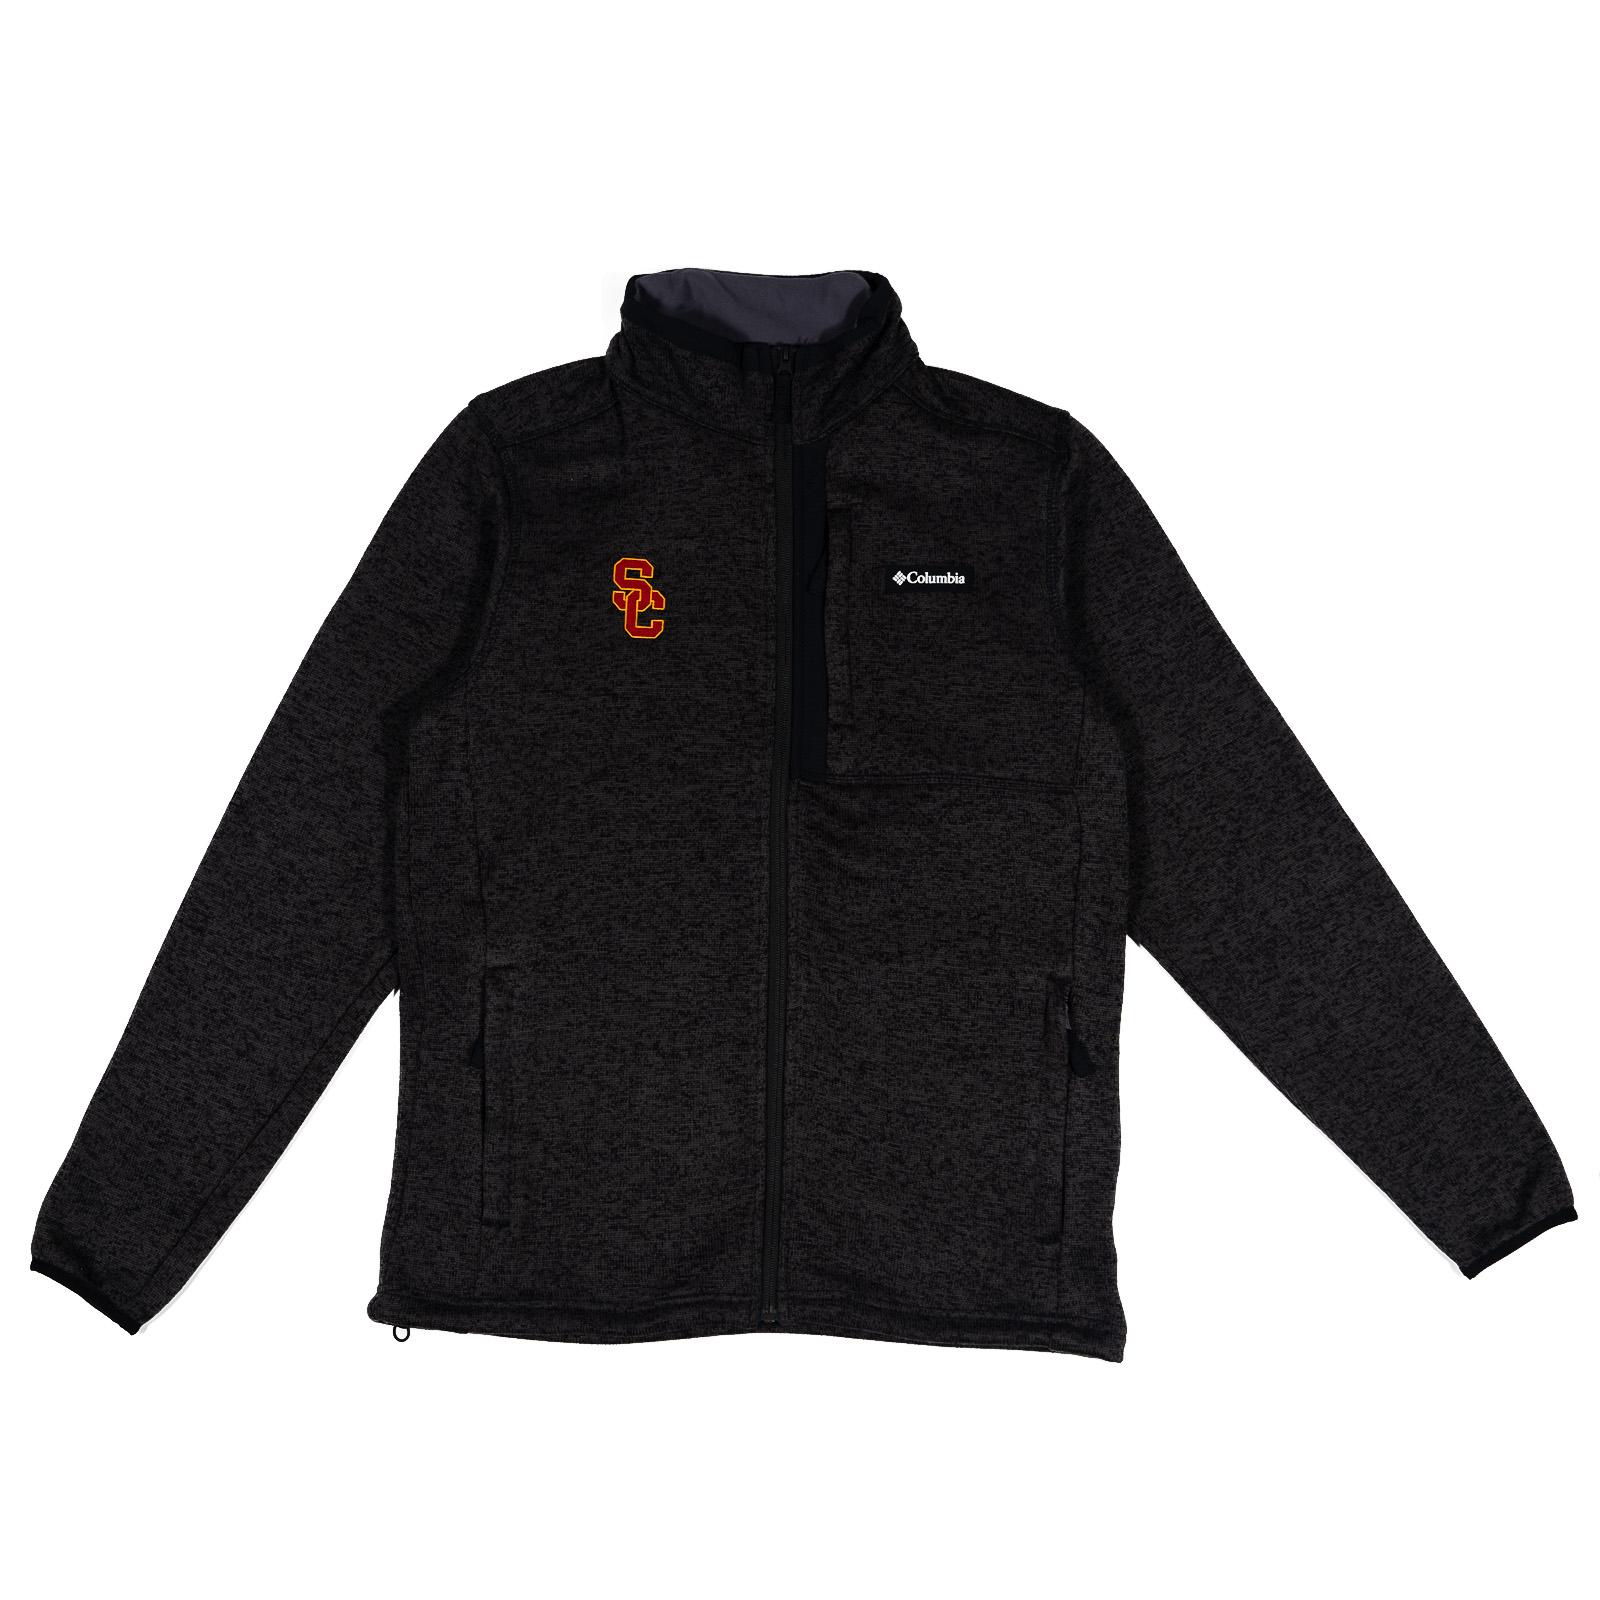 SC Interlock Mens Sweater Weather Full Zip Fleece Jacket image01